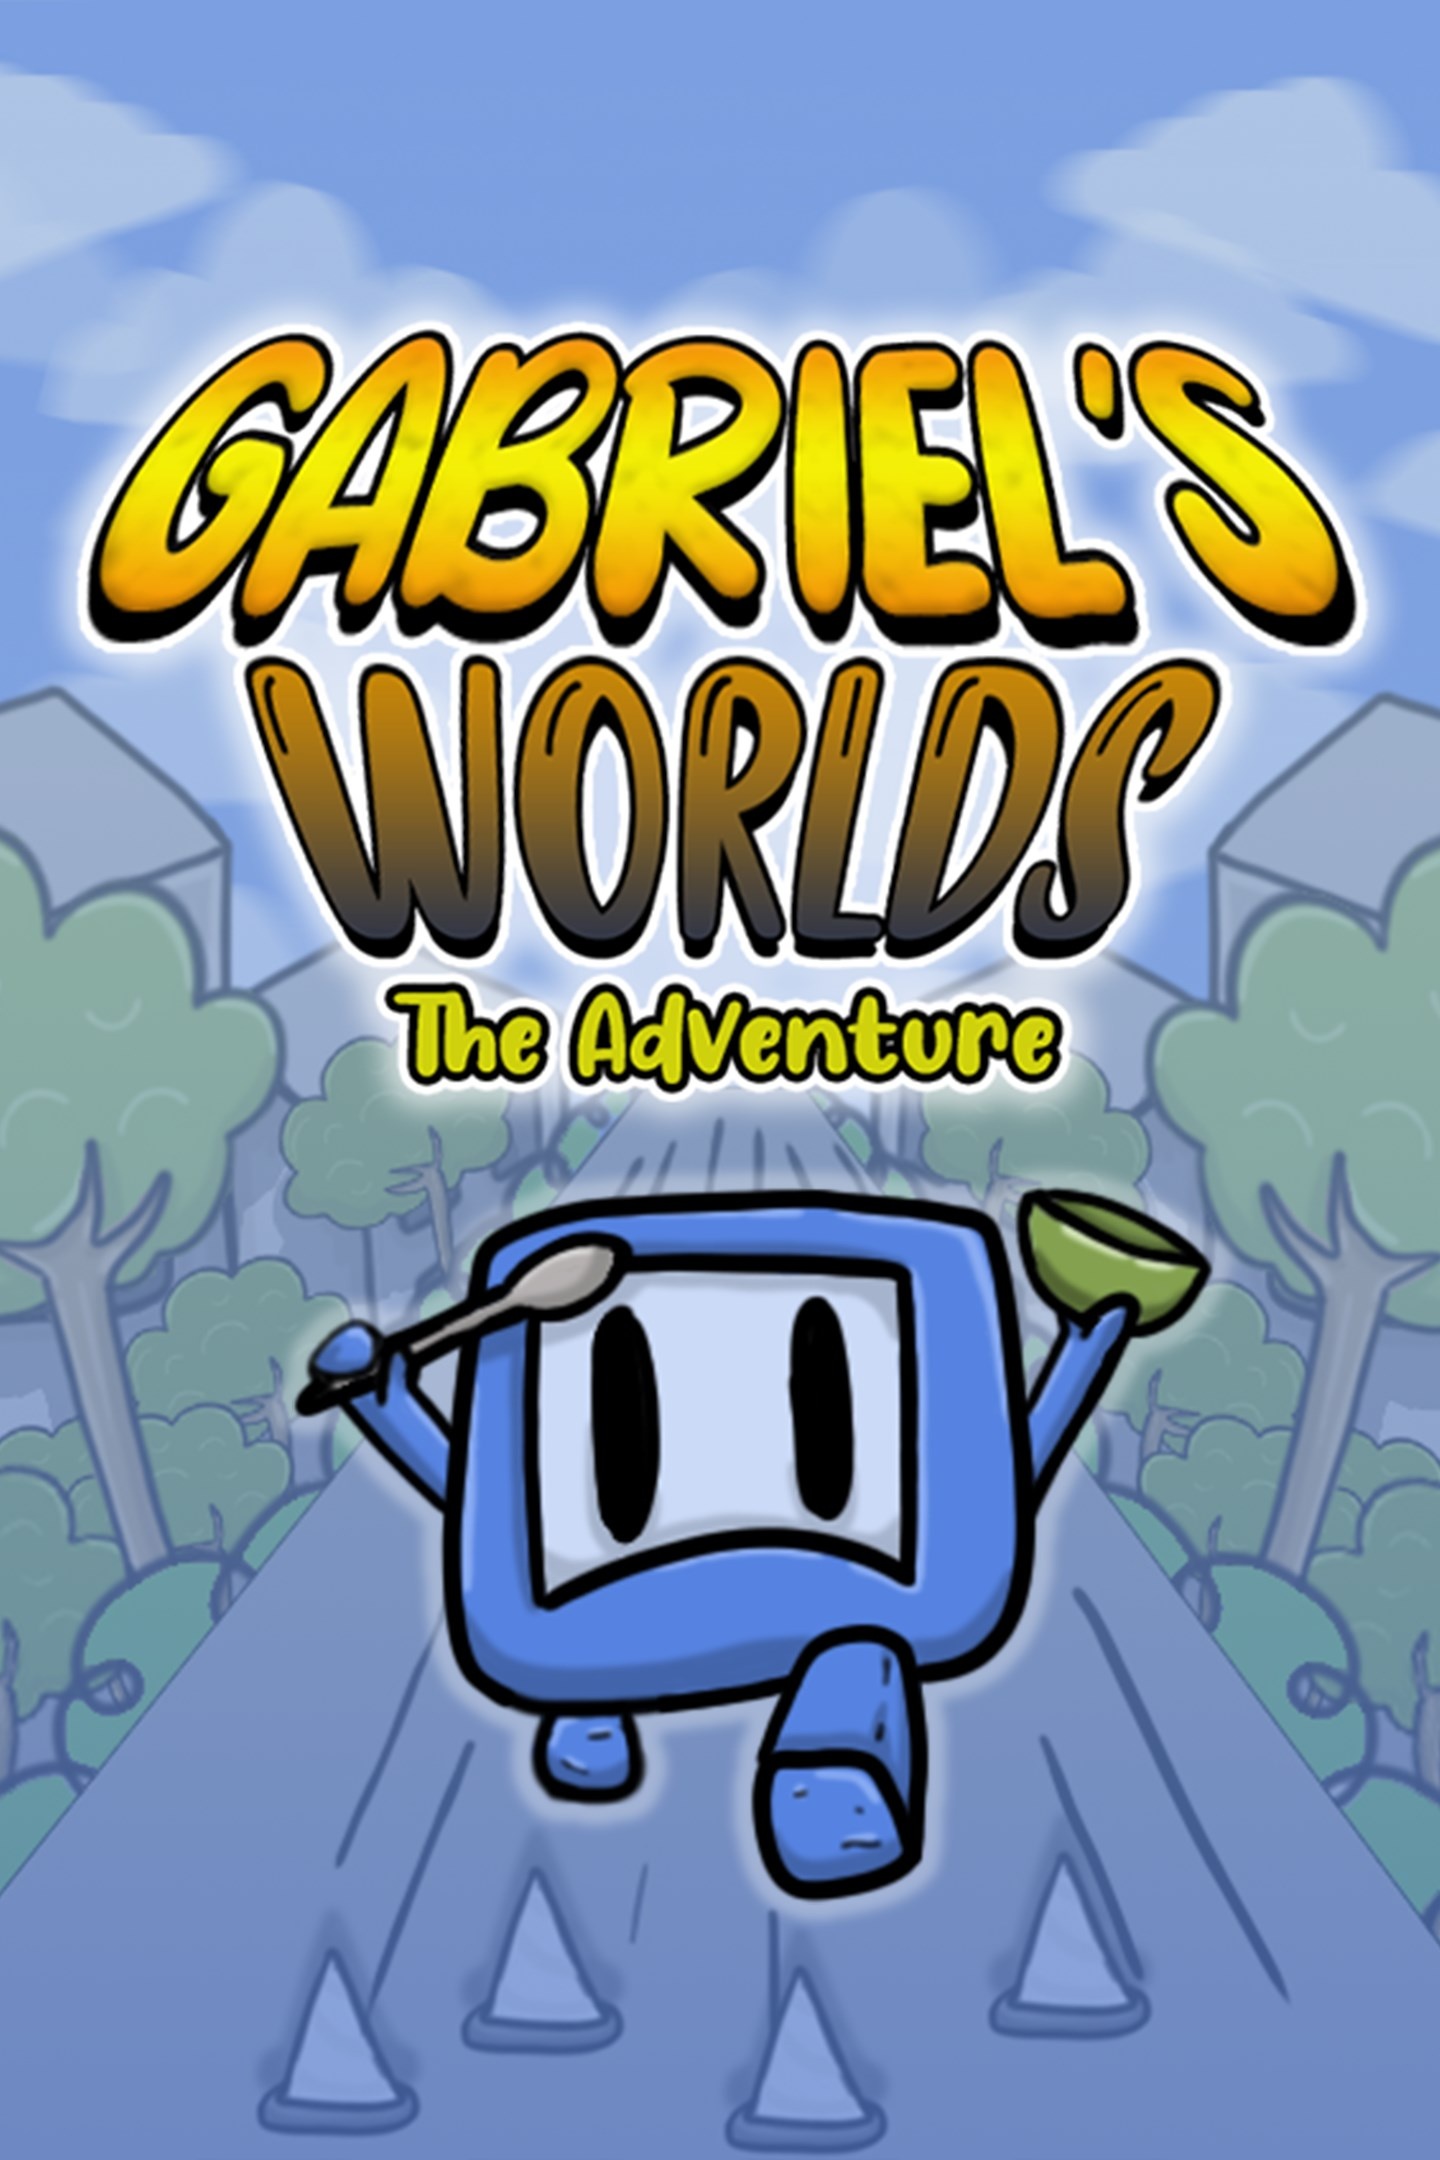 Next Week on Xbox: Neue Spiele vom 14. bis zum 18. November: Gabriels Worlds THe Adventure